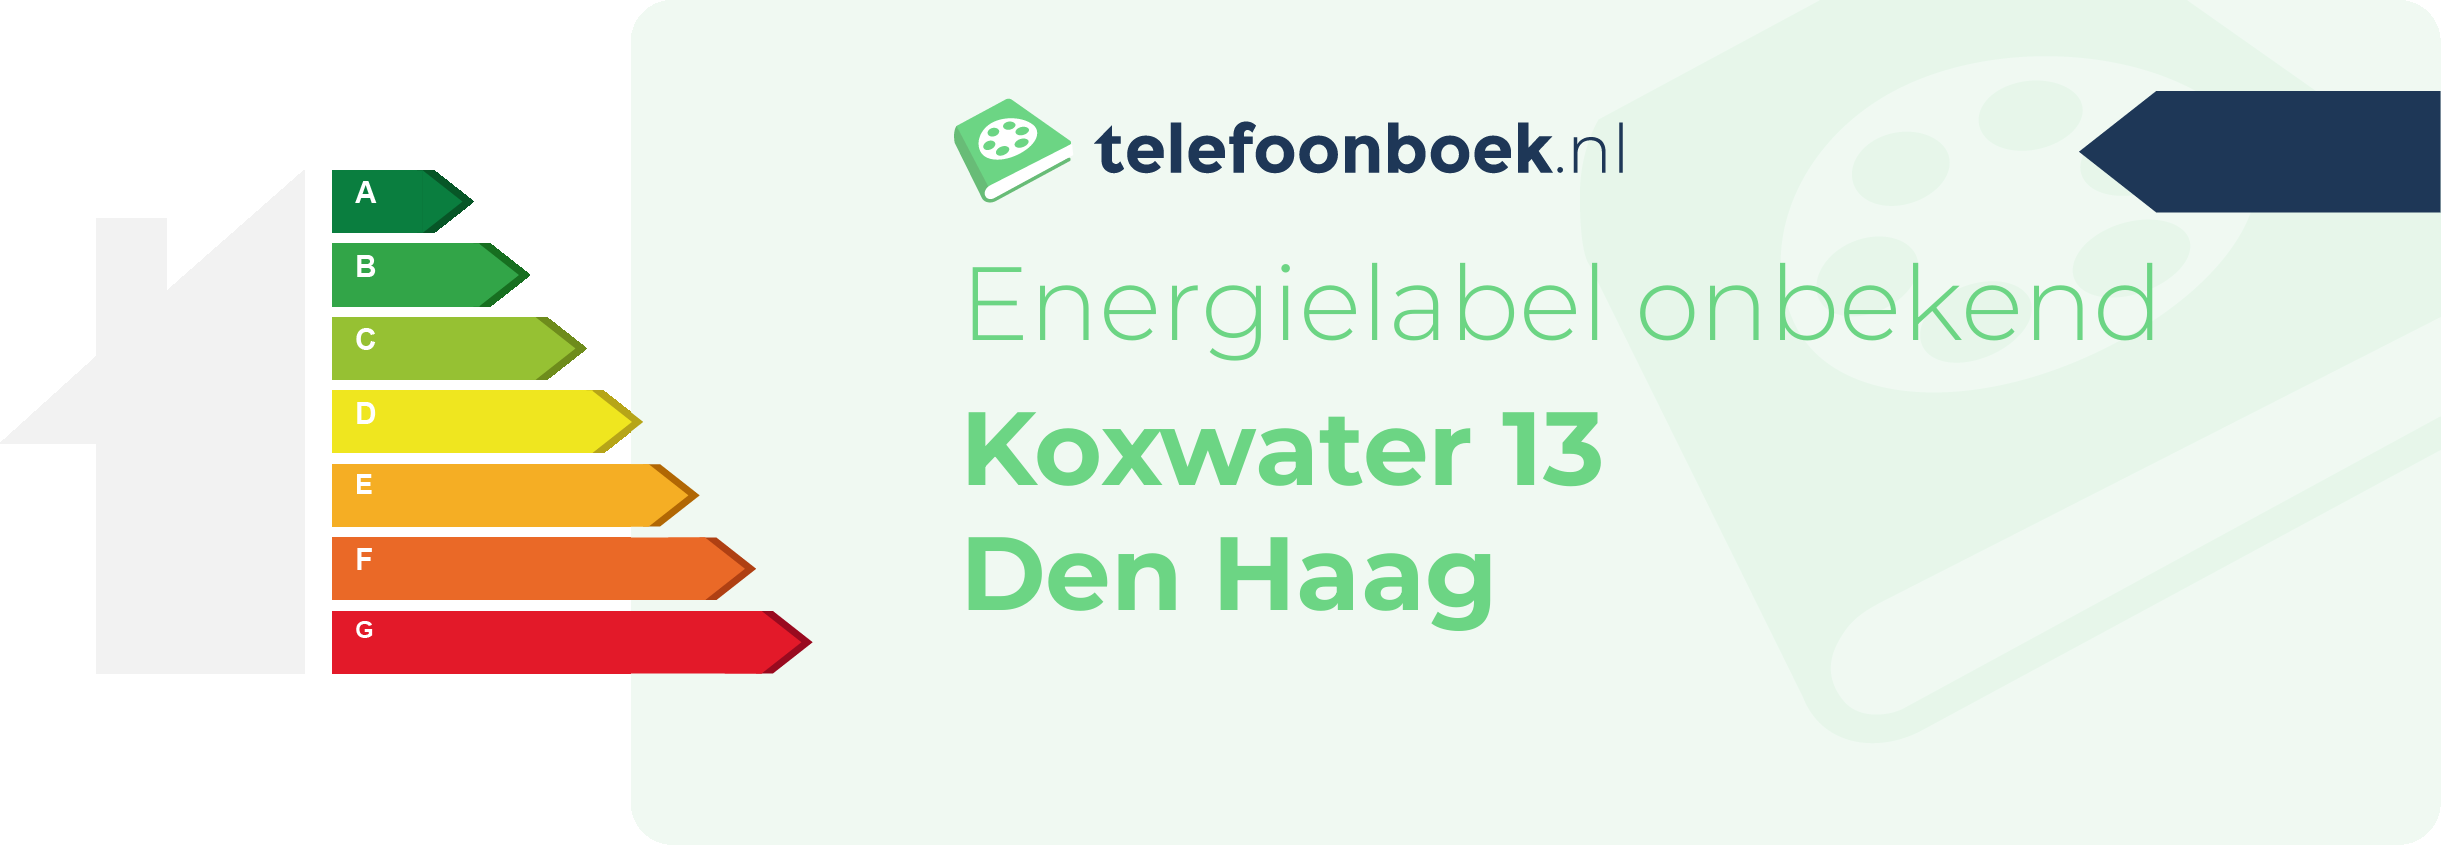 Energielabel Koxwater 13 Den Haag